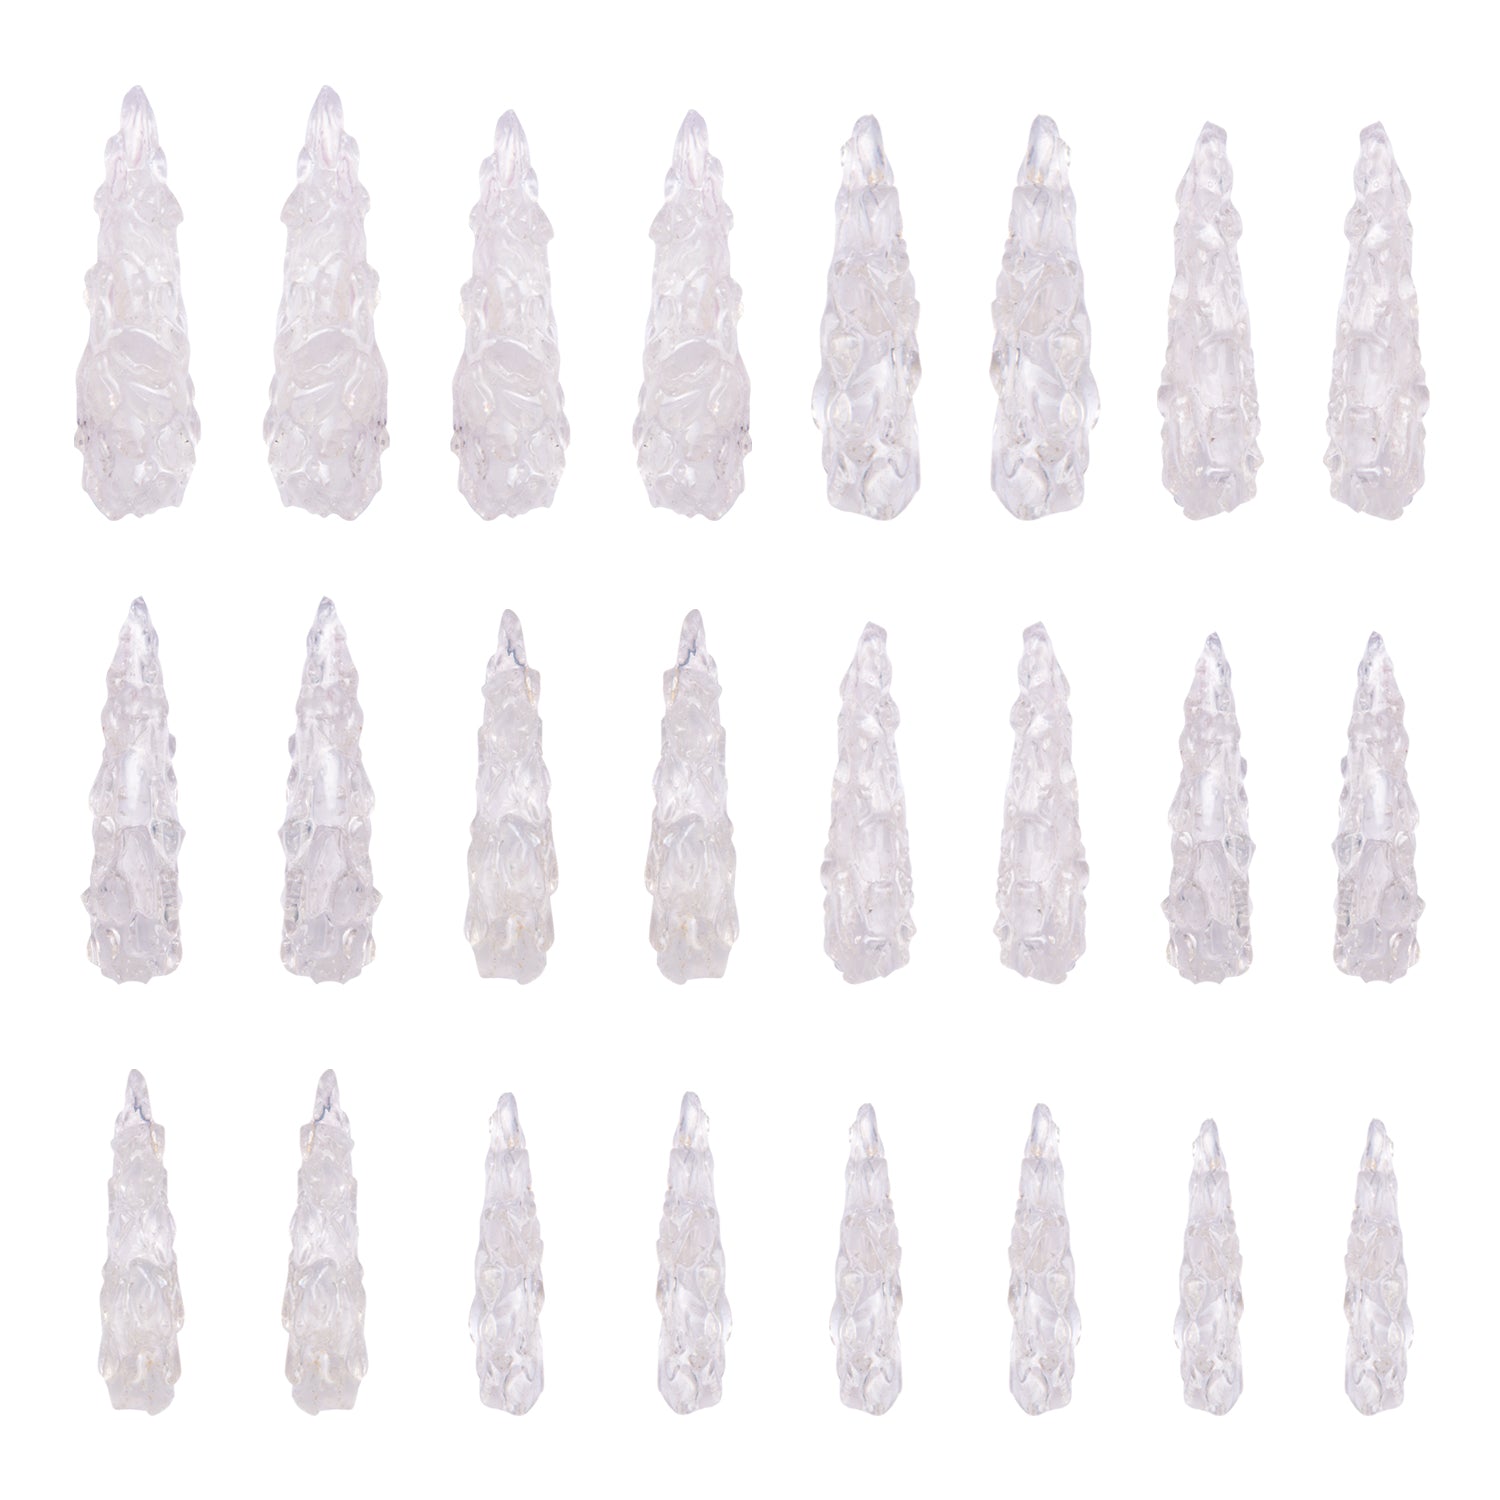 H179 - Clear Quartz Crystal - 24 Pcs